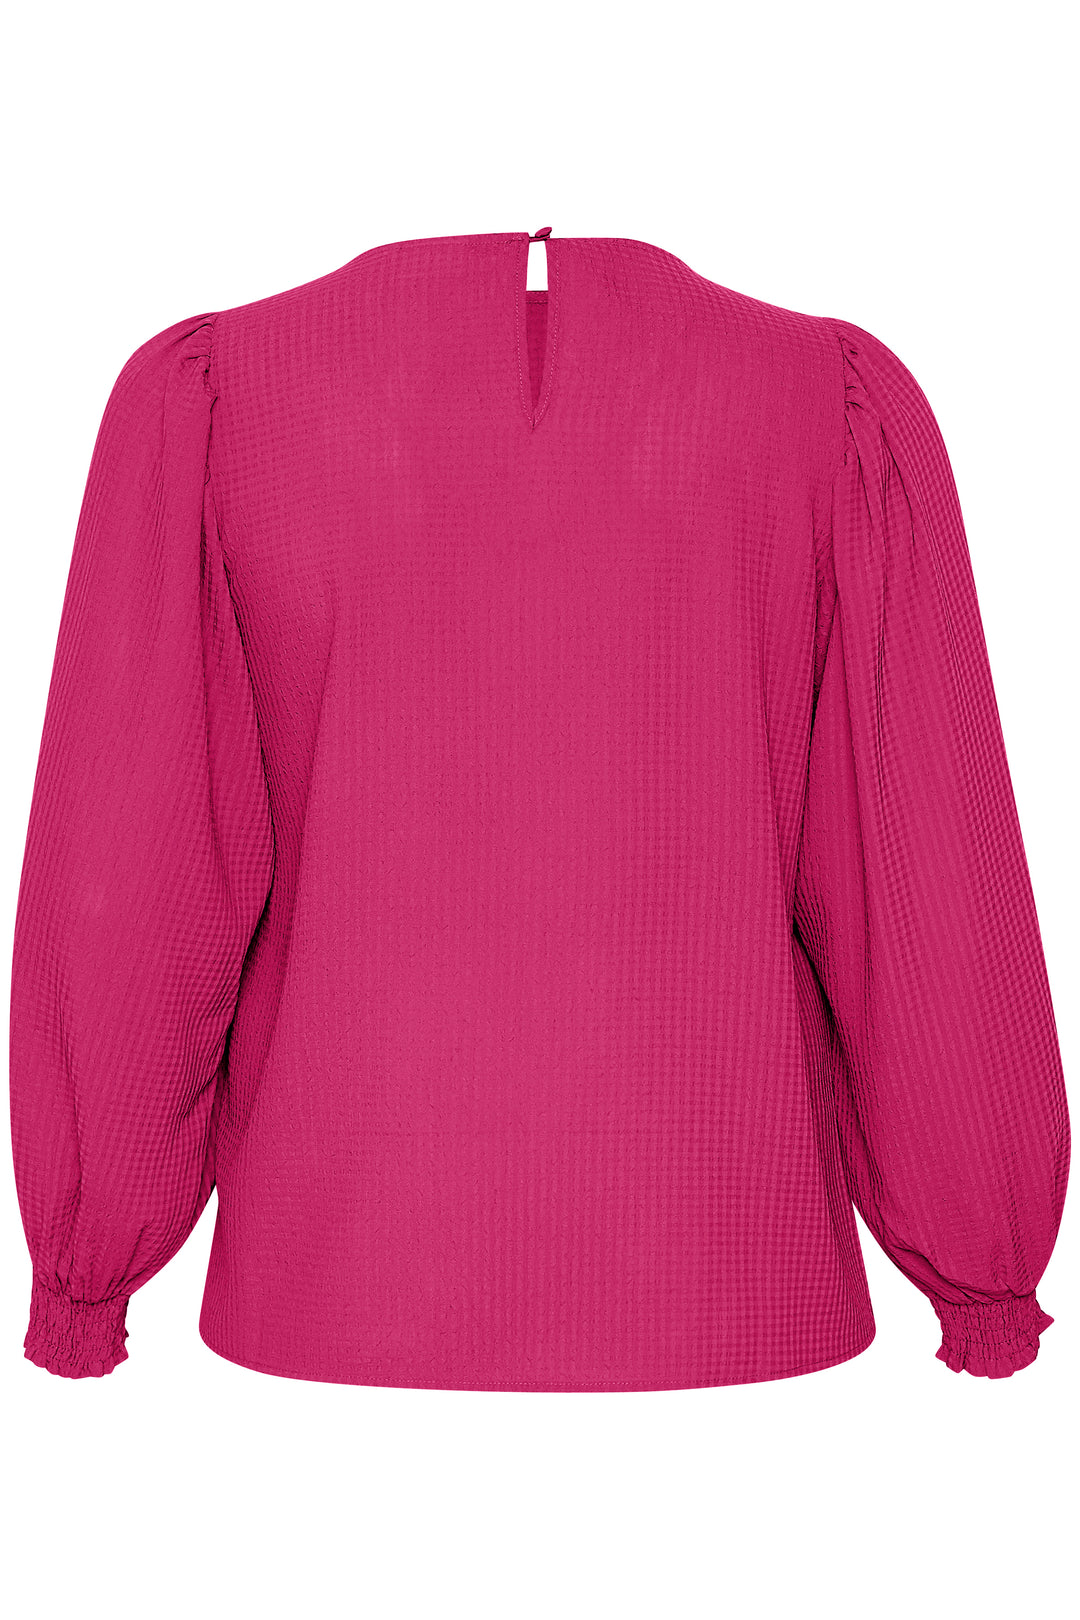 fuchsia blouse - kaffe curve - - grote maten - dameskleding - kledingwinkel - herent - leuven